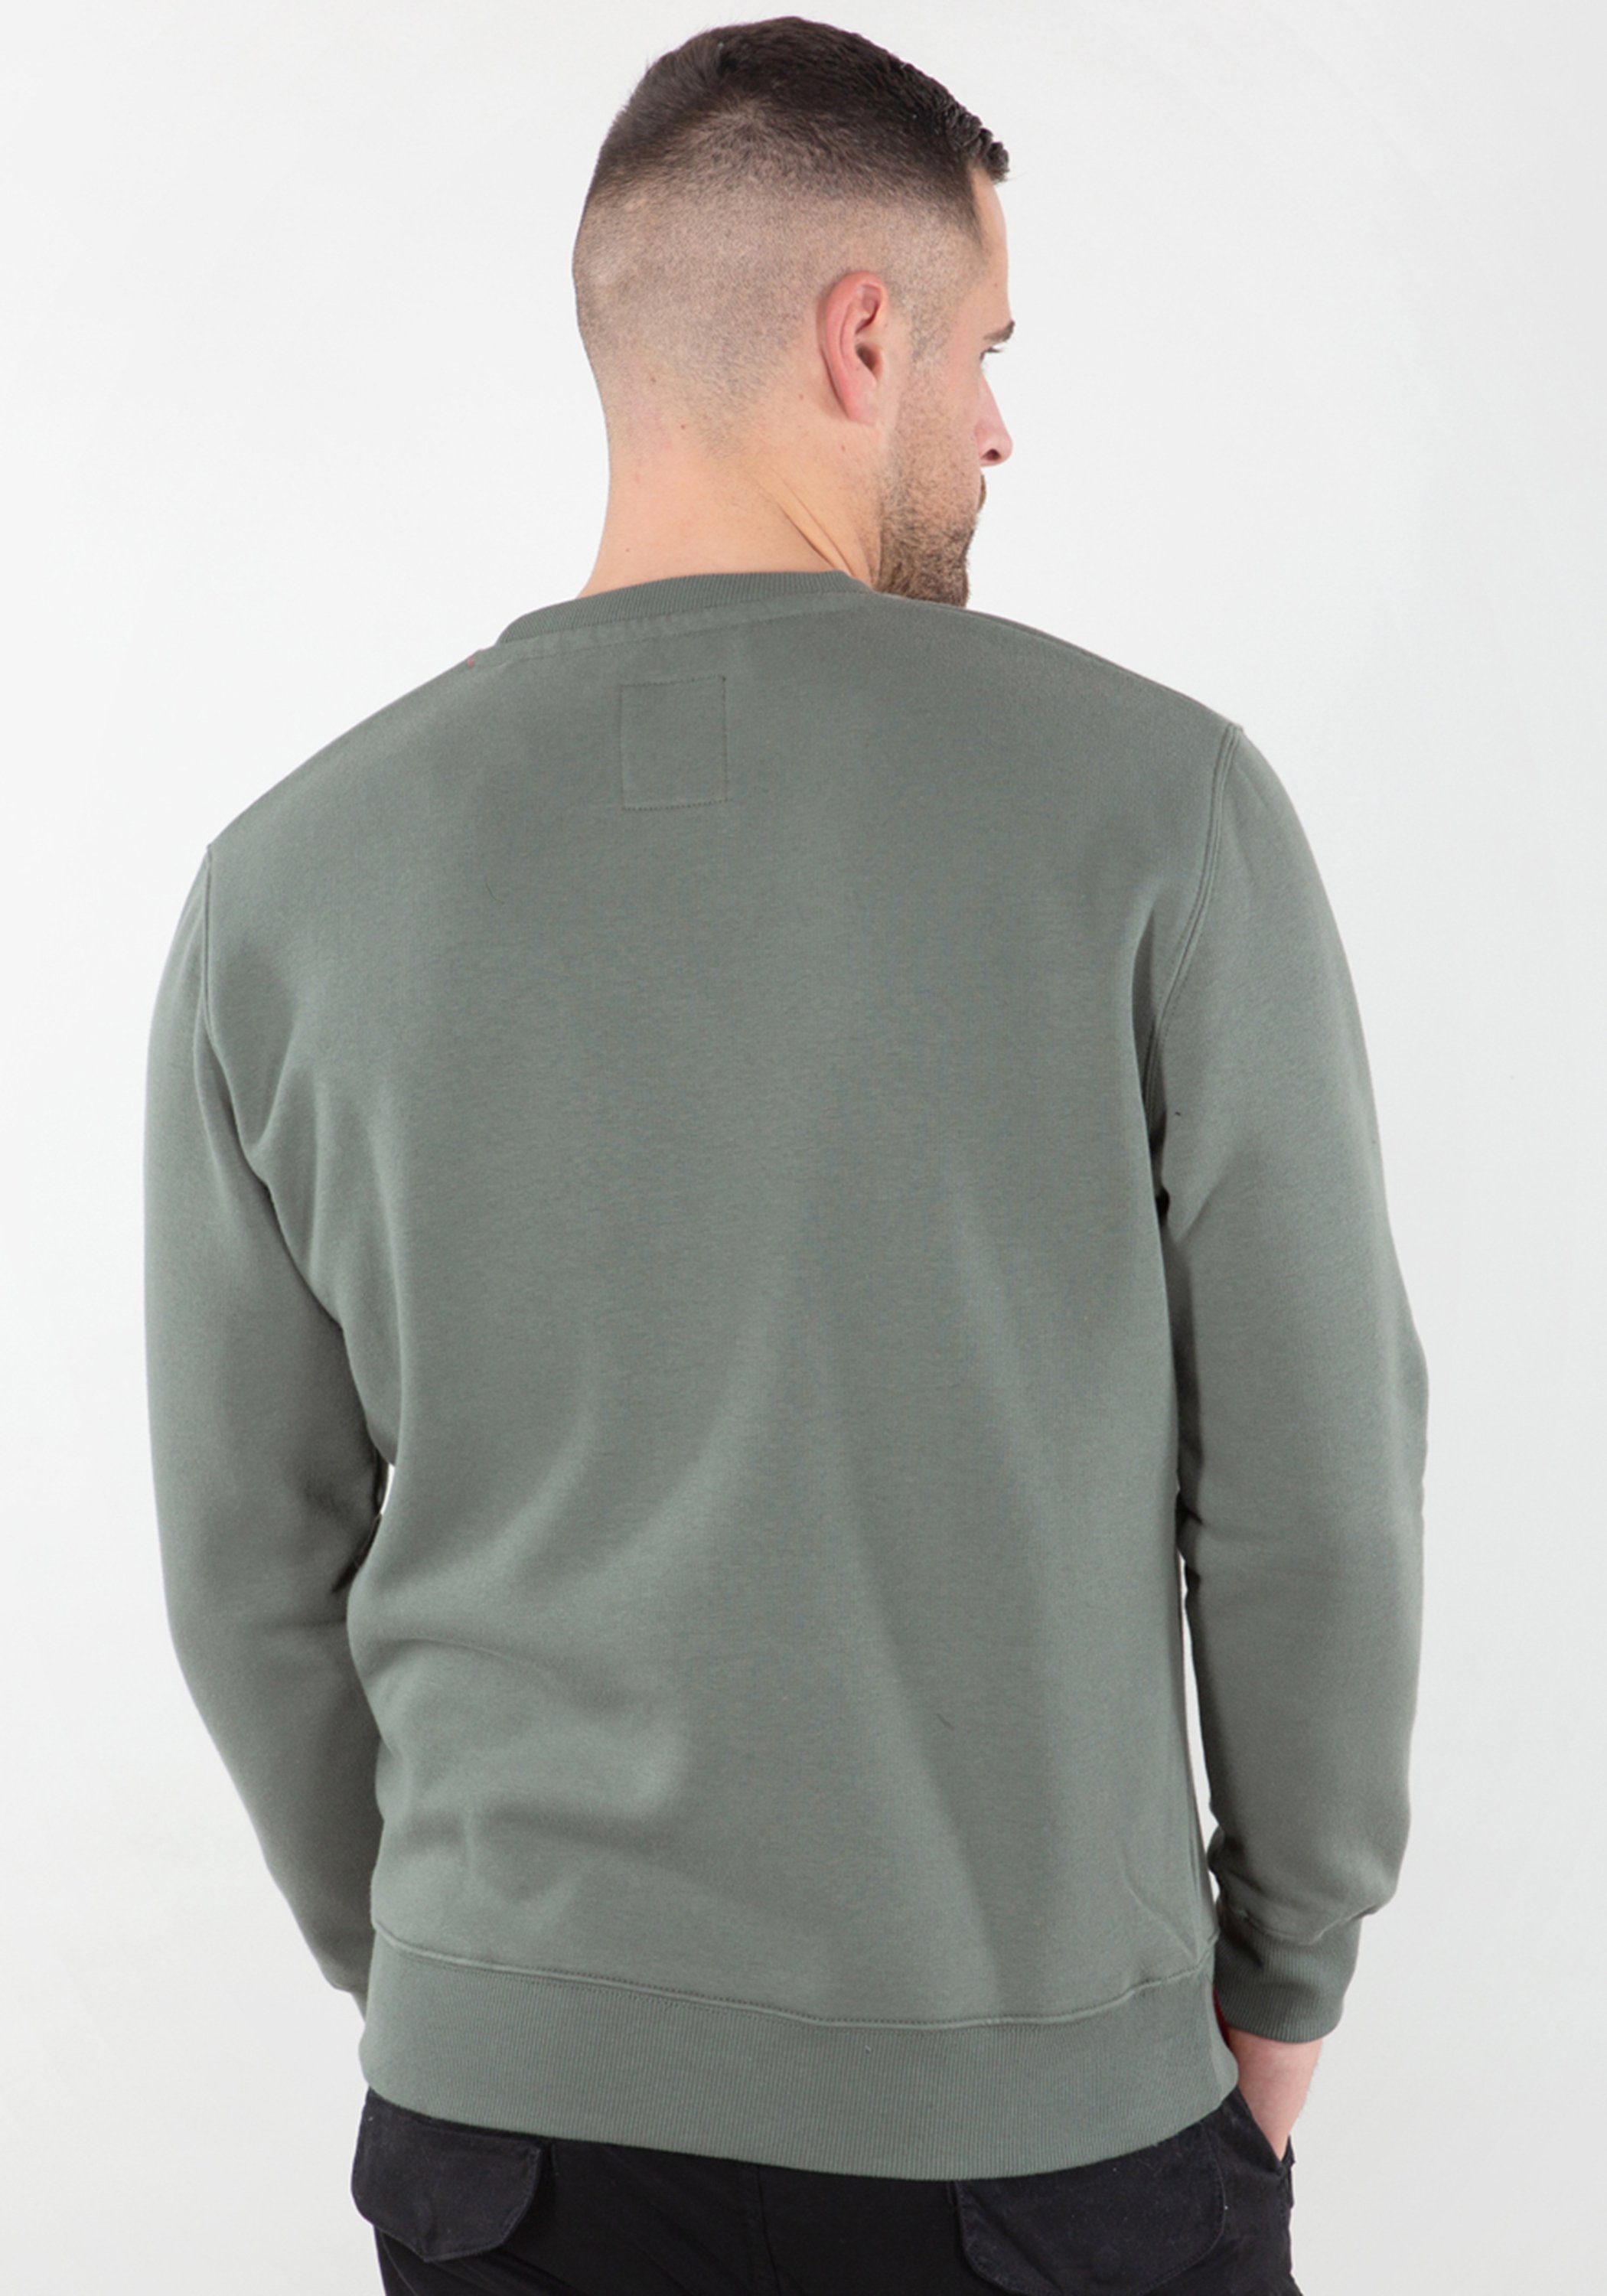 Alpha Industries Sweater Alpha Industries Sweatshirts green Men - Sweater Basic vintage